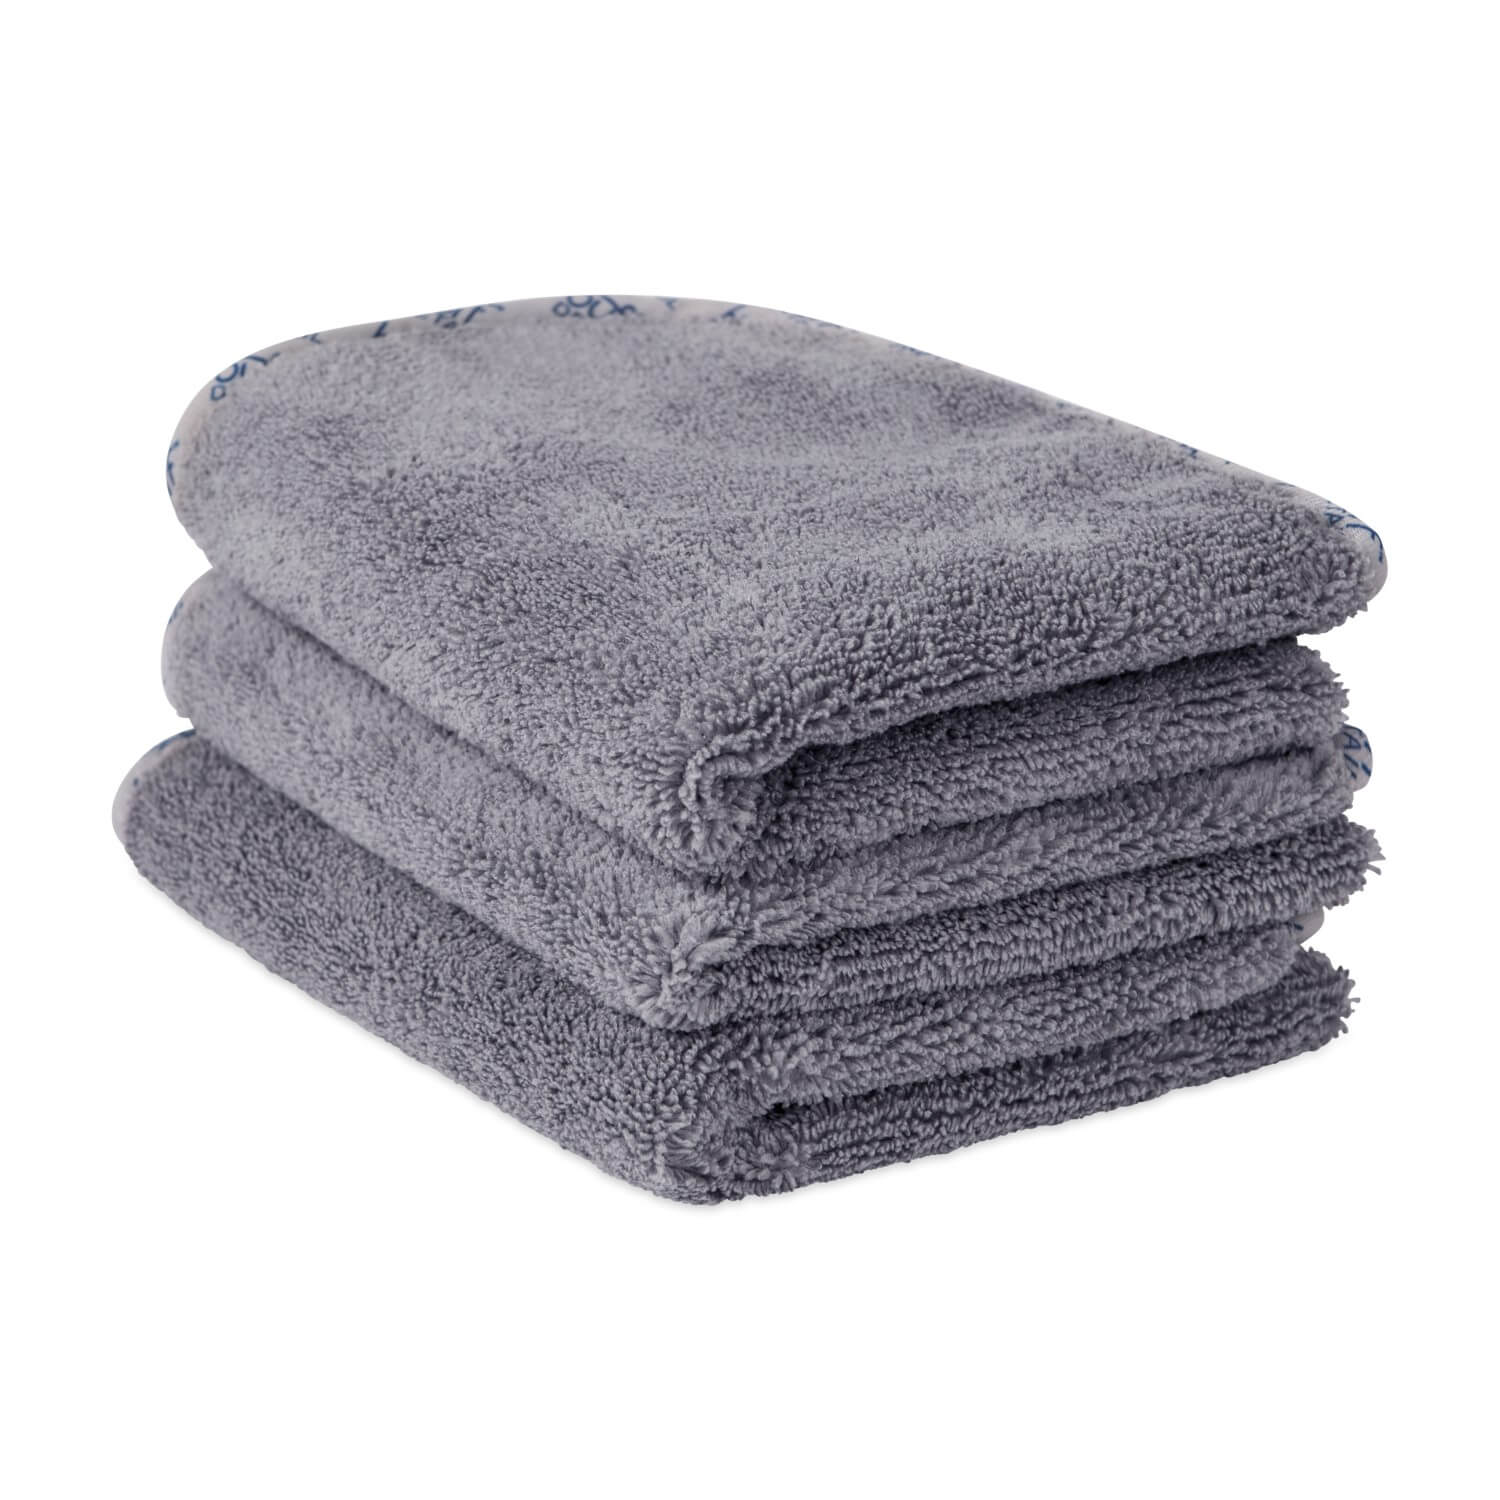 Gray Microfiber Detailing Towels